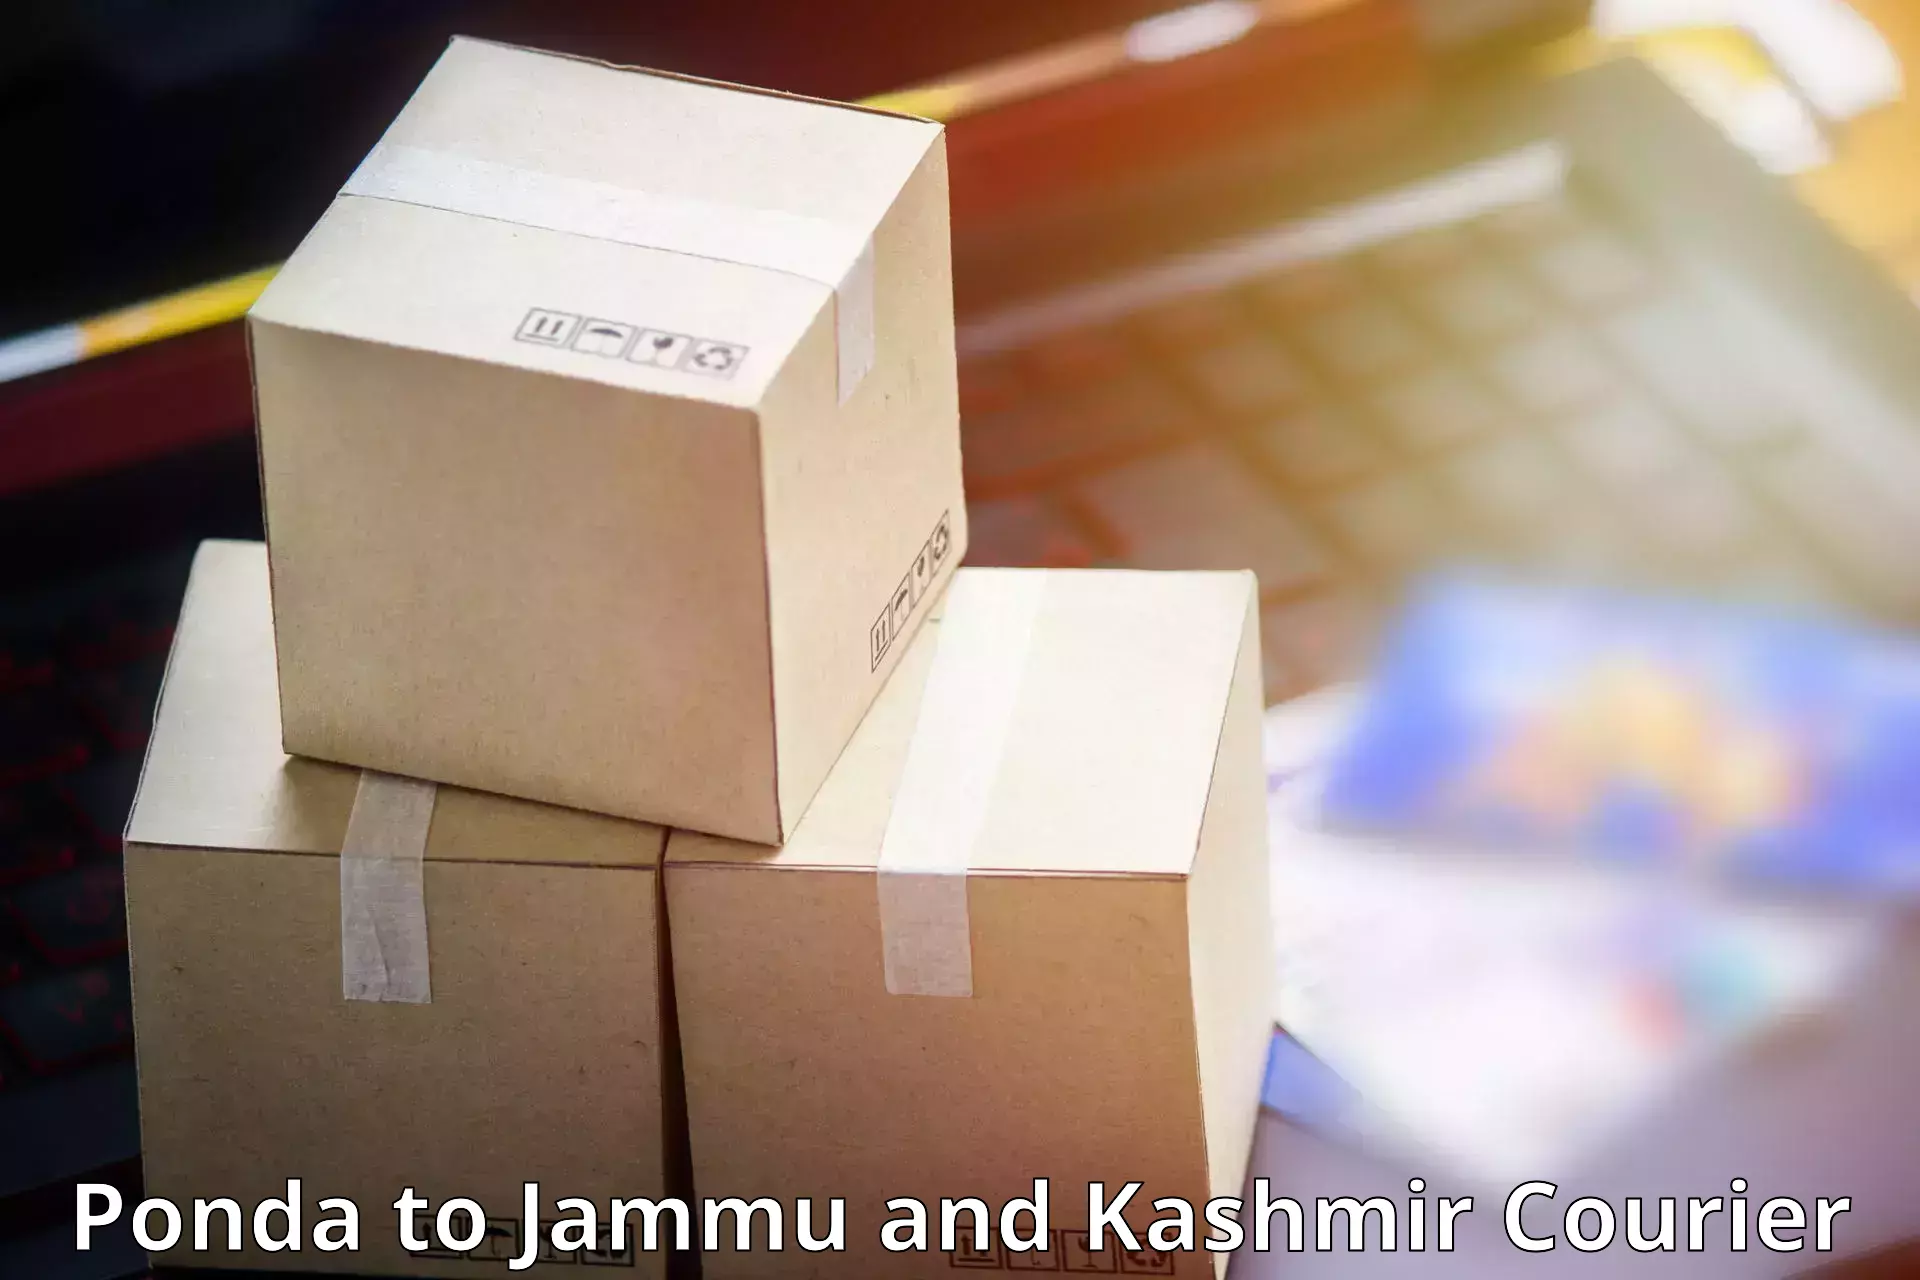 Multi-city courier Ponda to Jammu